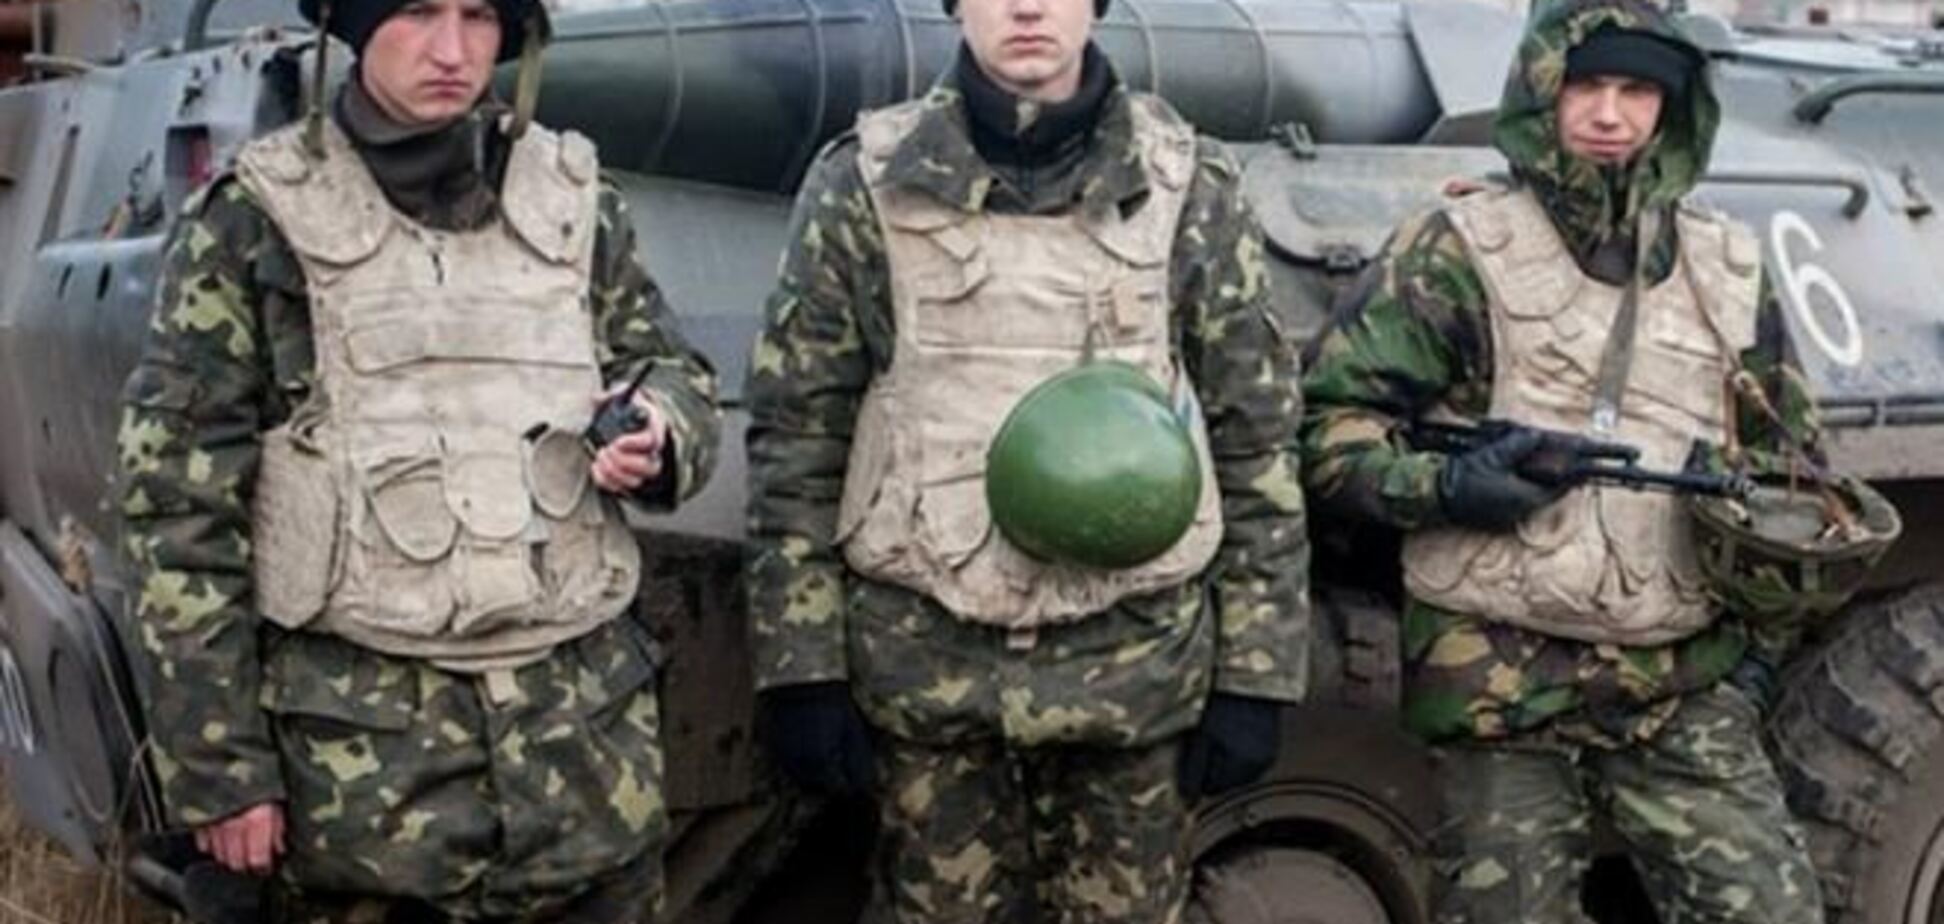 Военные, которые останутся в Крыму, могут служить в армии РФ - Генштаб ВС РФ